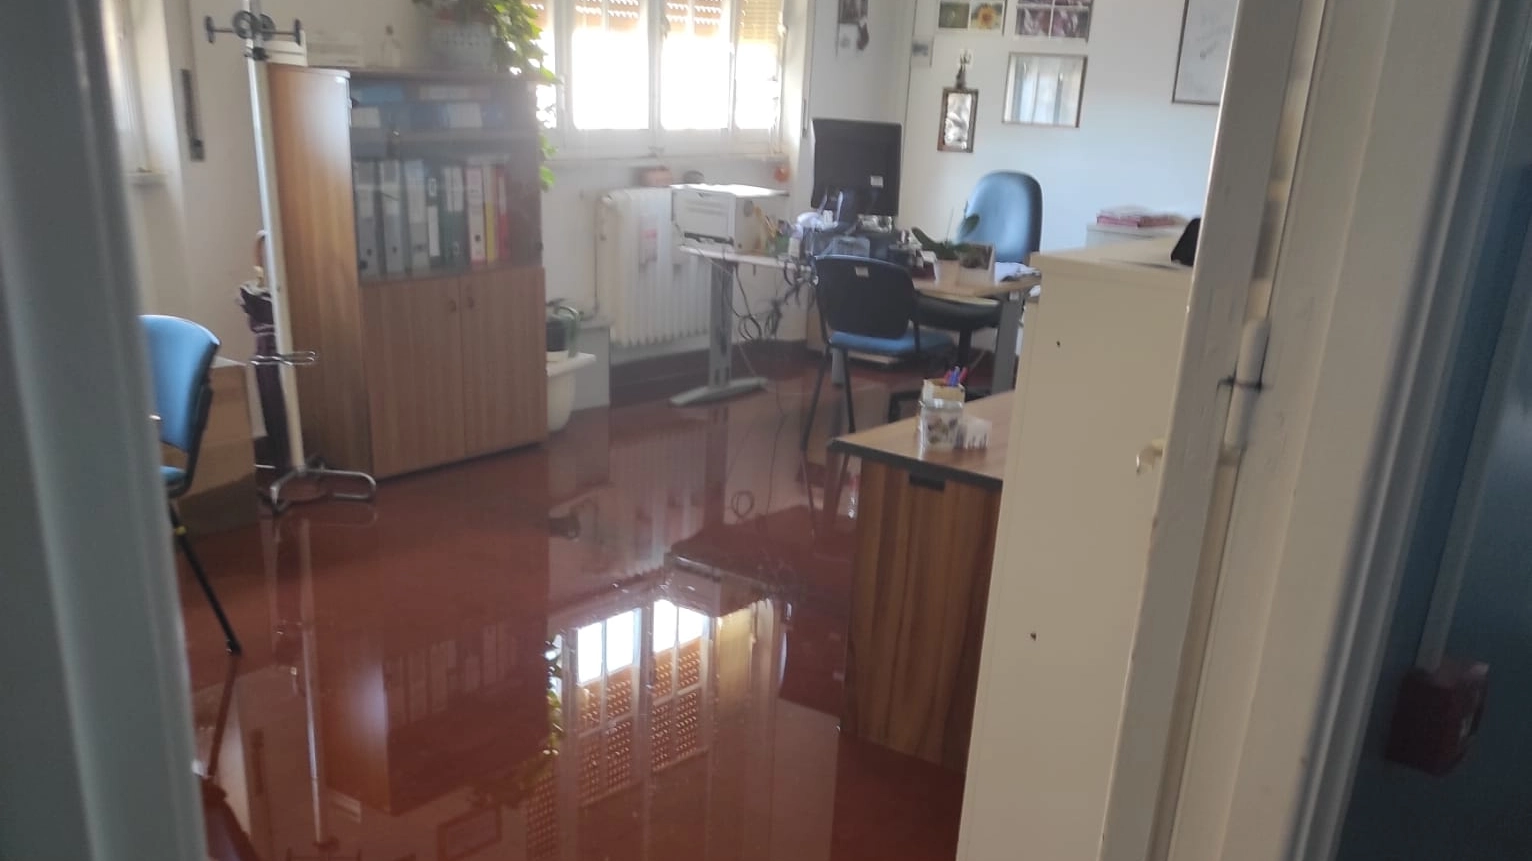 Il pavimento allagato nei locali amministrativi dell'ospedale di Livorno